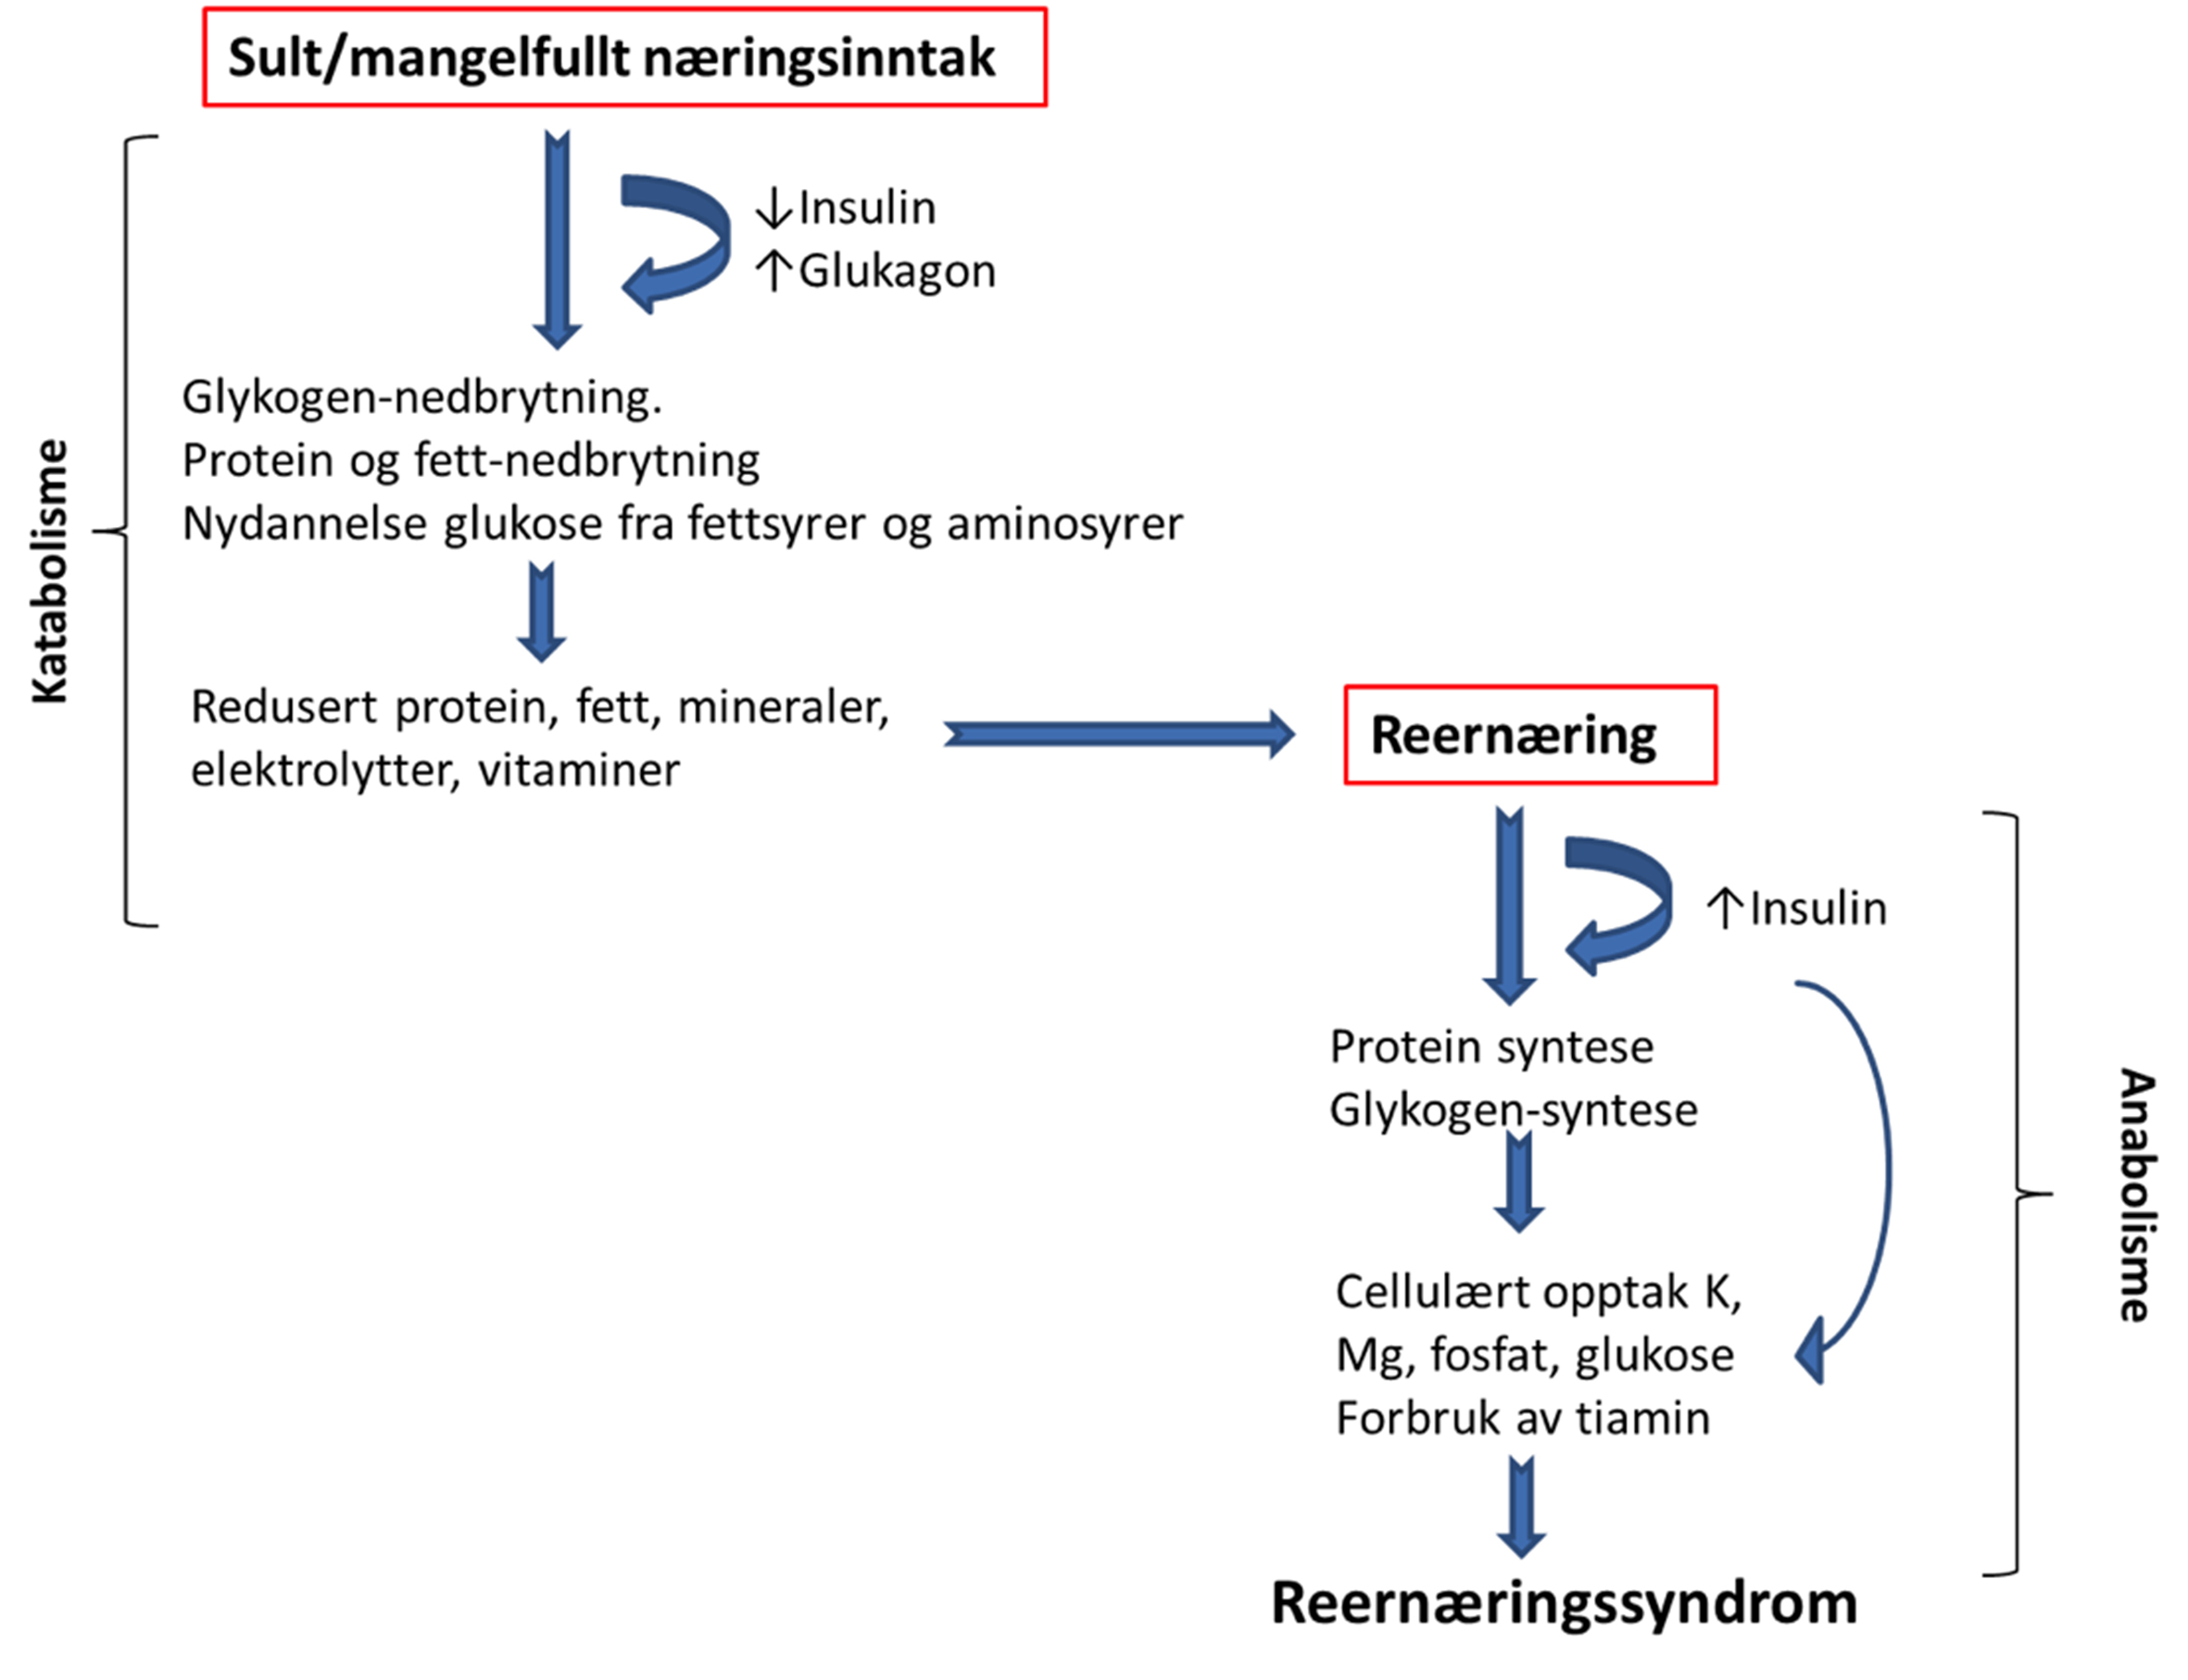 Figur 1. Patogenese for utvikling av reernæringssyndrom Reernæringssyndrom forårsakes av et raskt skifte fra katabol metabolisme (fettmetabolisme) til anabol metabolisme (karbohydratmetabolisme) med insulinsekresjon og påfølgende elektrolytt-skift fra ekstracellulært til intracellulært.